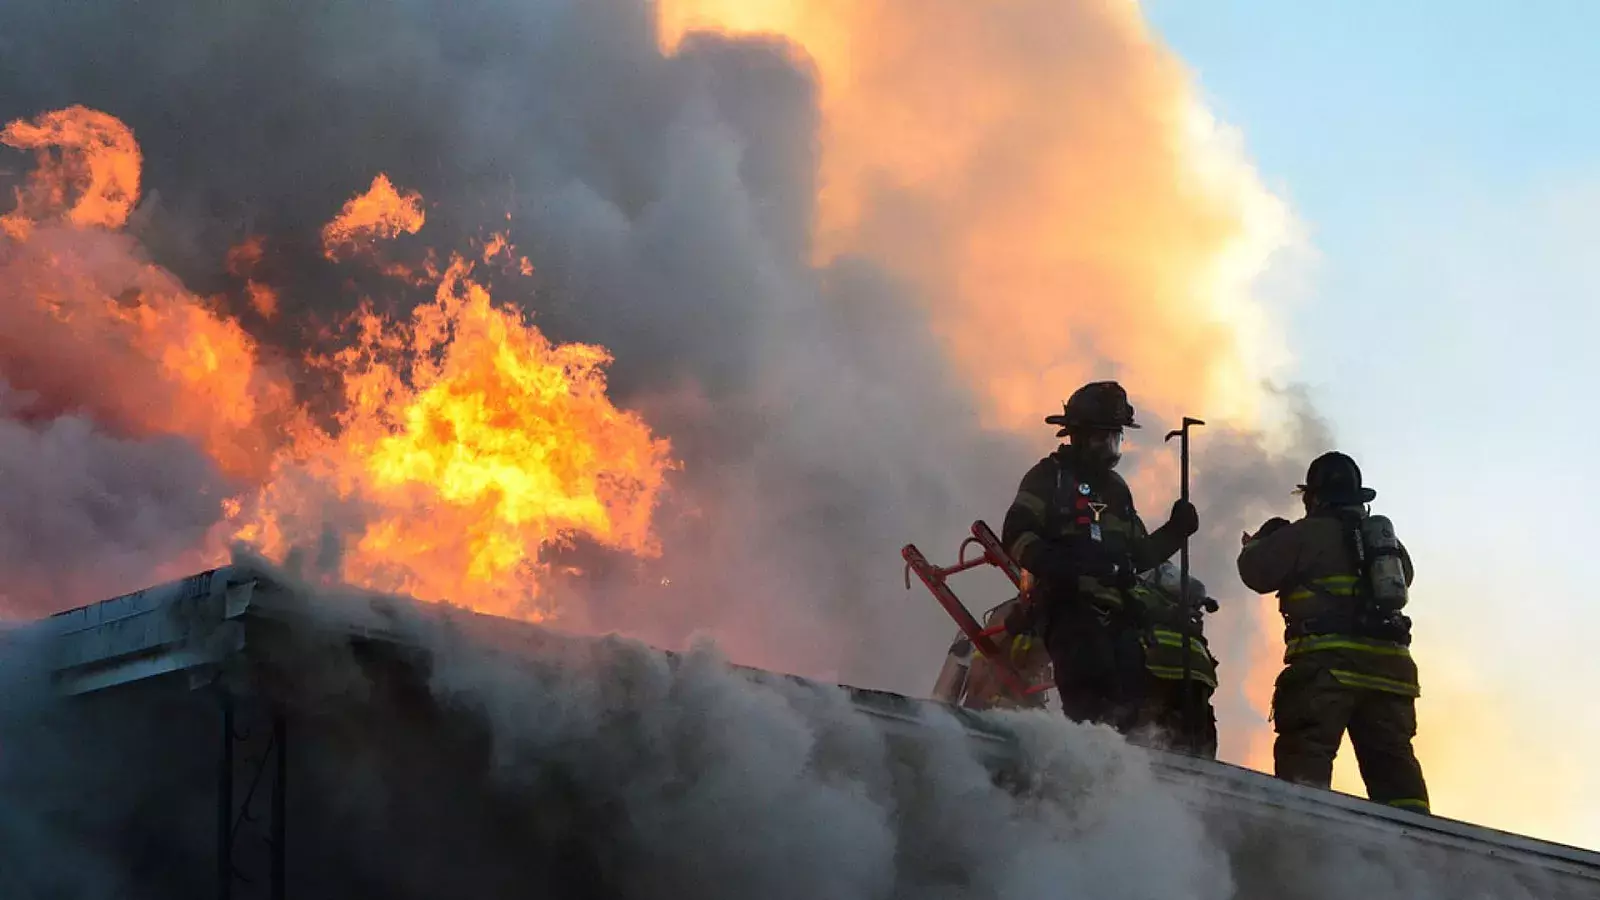 VIDEO | “Dios me dio la fuerza”: Hispano salva a tres niños atrapados en edificio en llamas